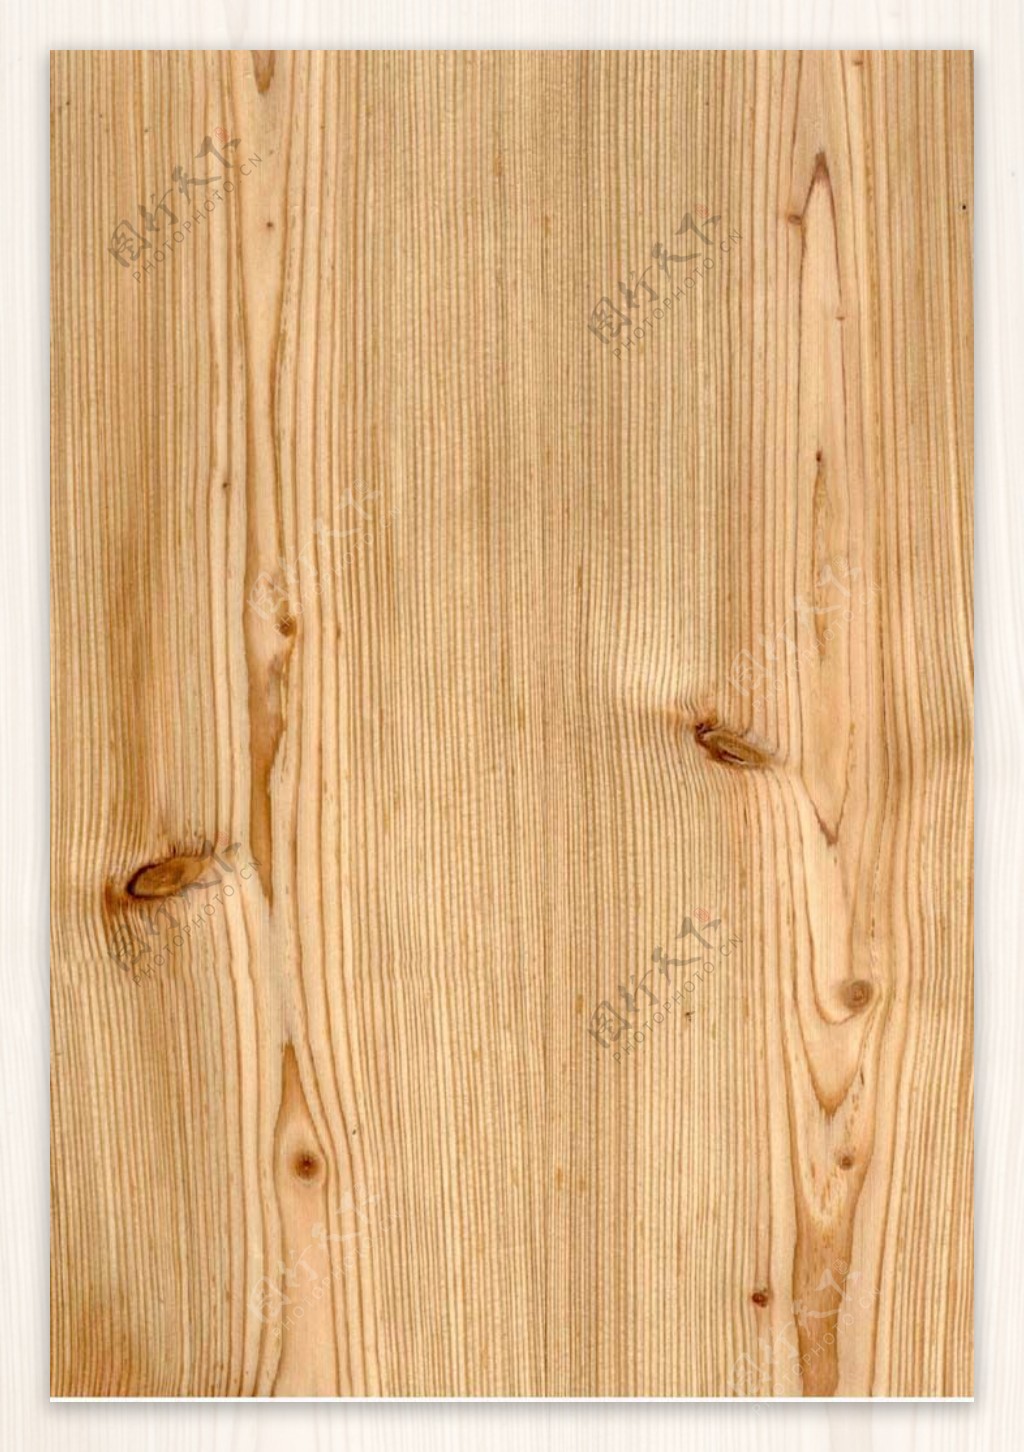 木材木纹浮雕木板装饰板效果图3d材质图6